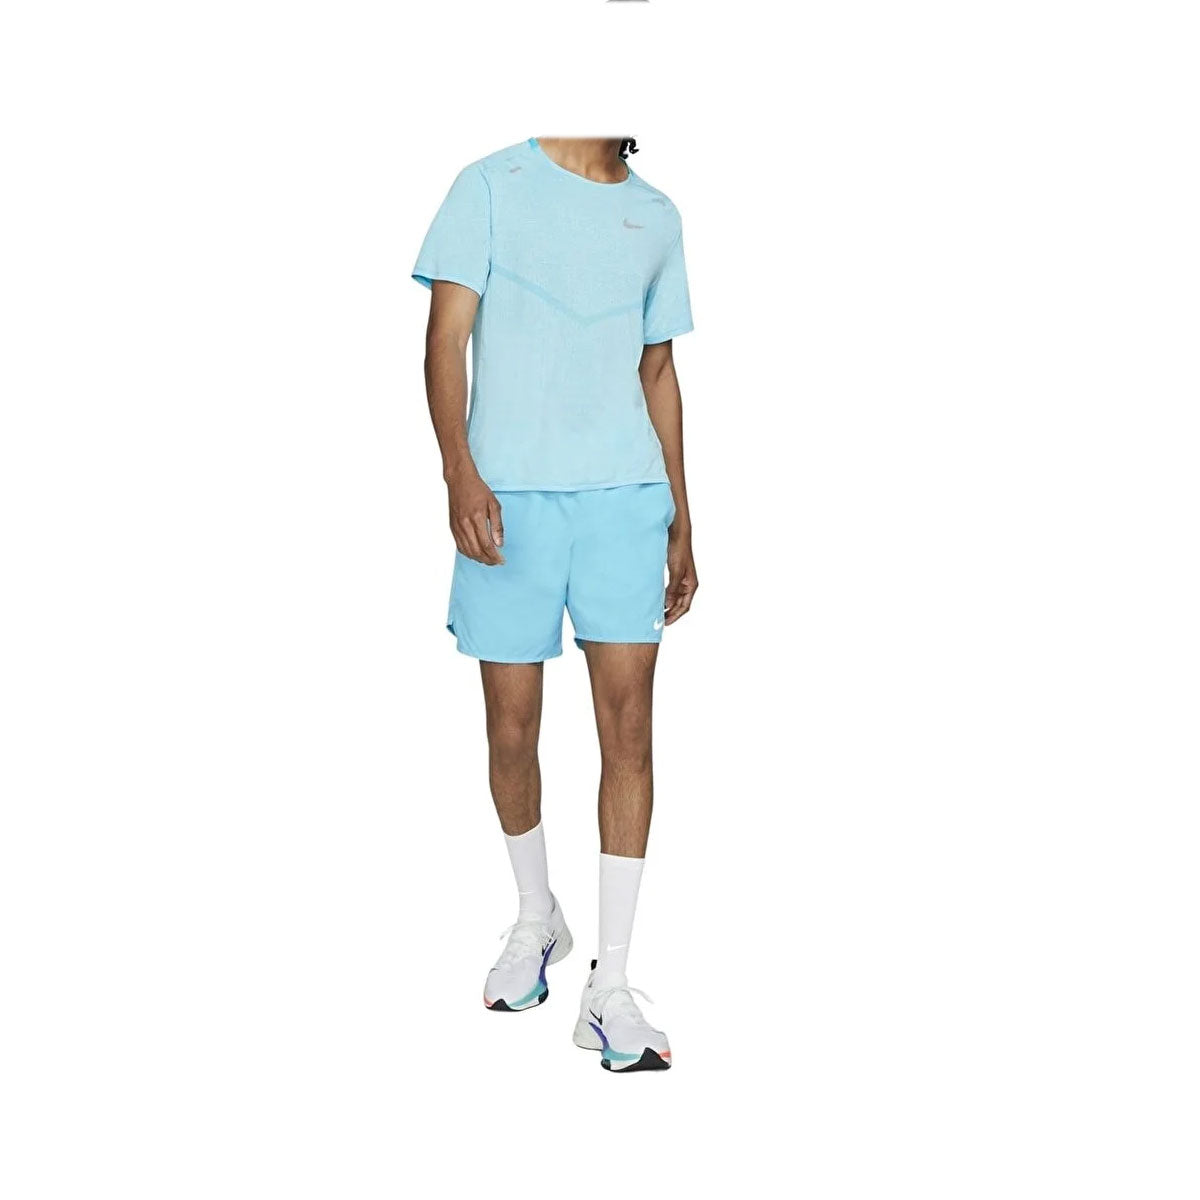 Nike Men's Dri-FIT ADV Run Division TechKnit Short-Sleeve Blue